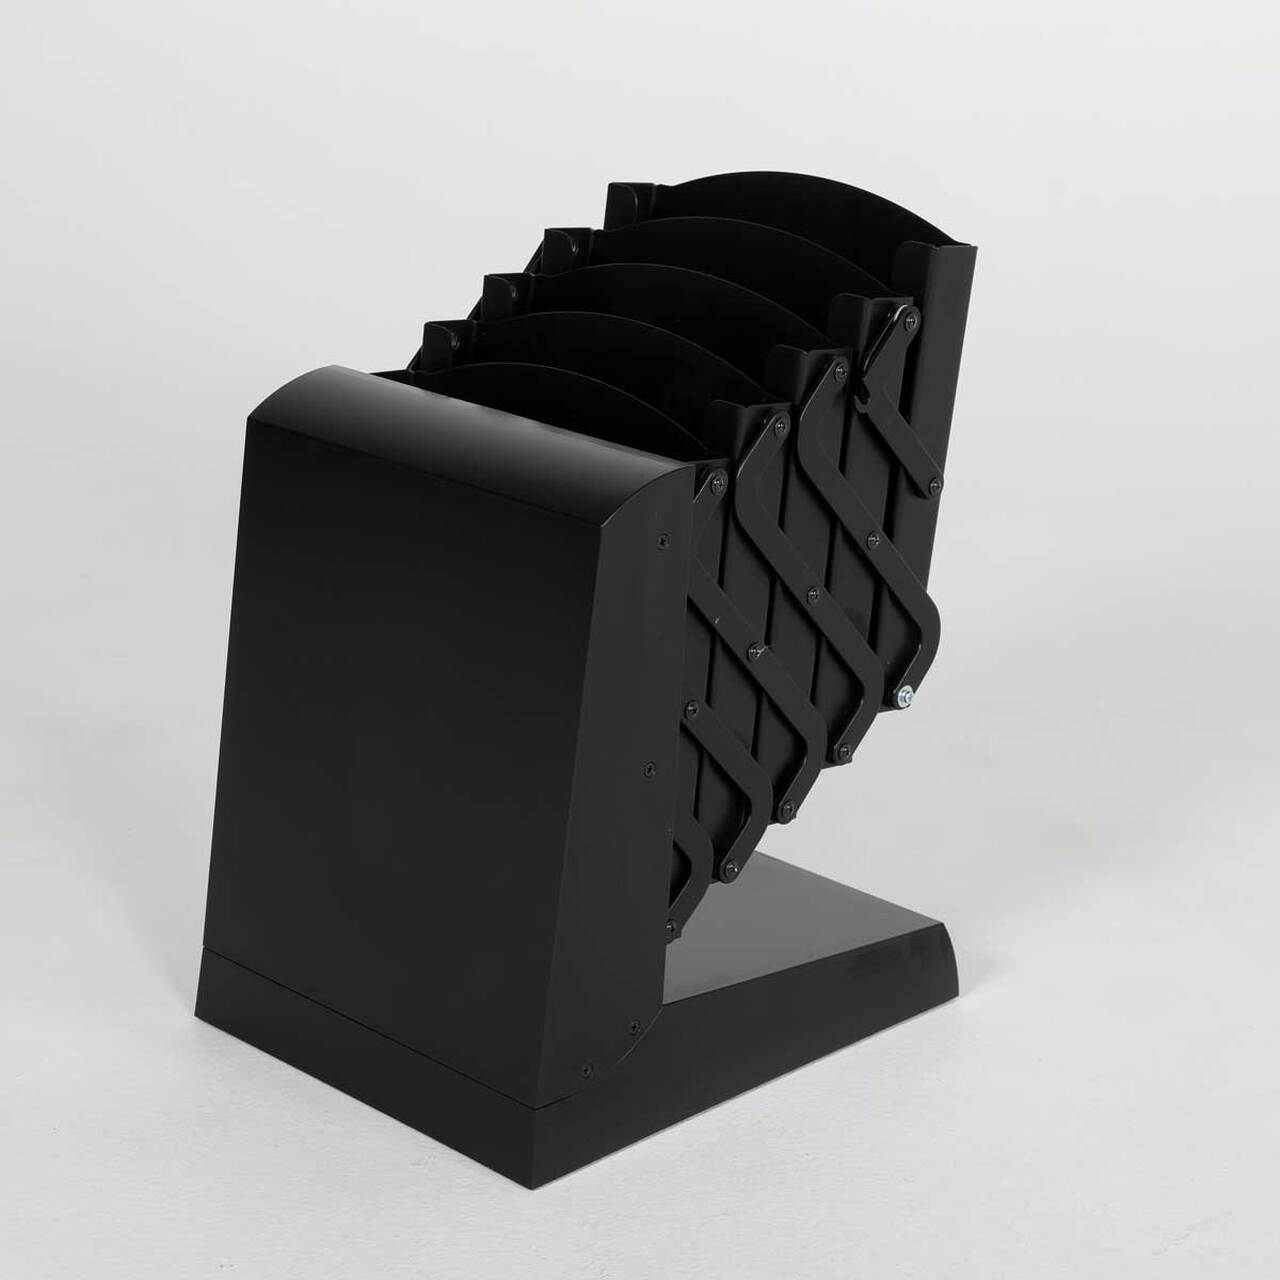 Stand/Suport zig zag pliabil PREMIUM, pentru expunere brosuri, pliante, reviste, cu 5 buzunare metalice, format A4 (210x297mm), negru.